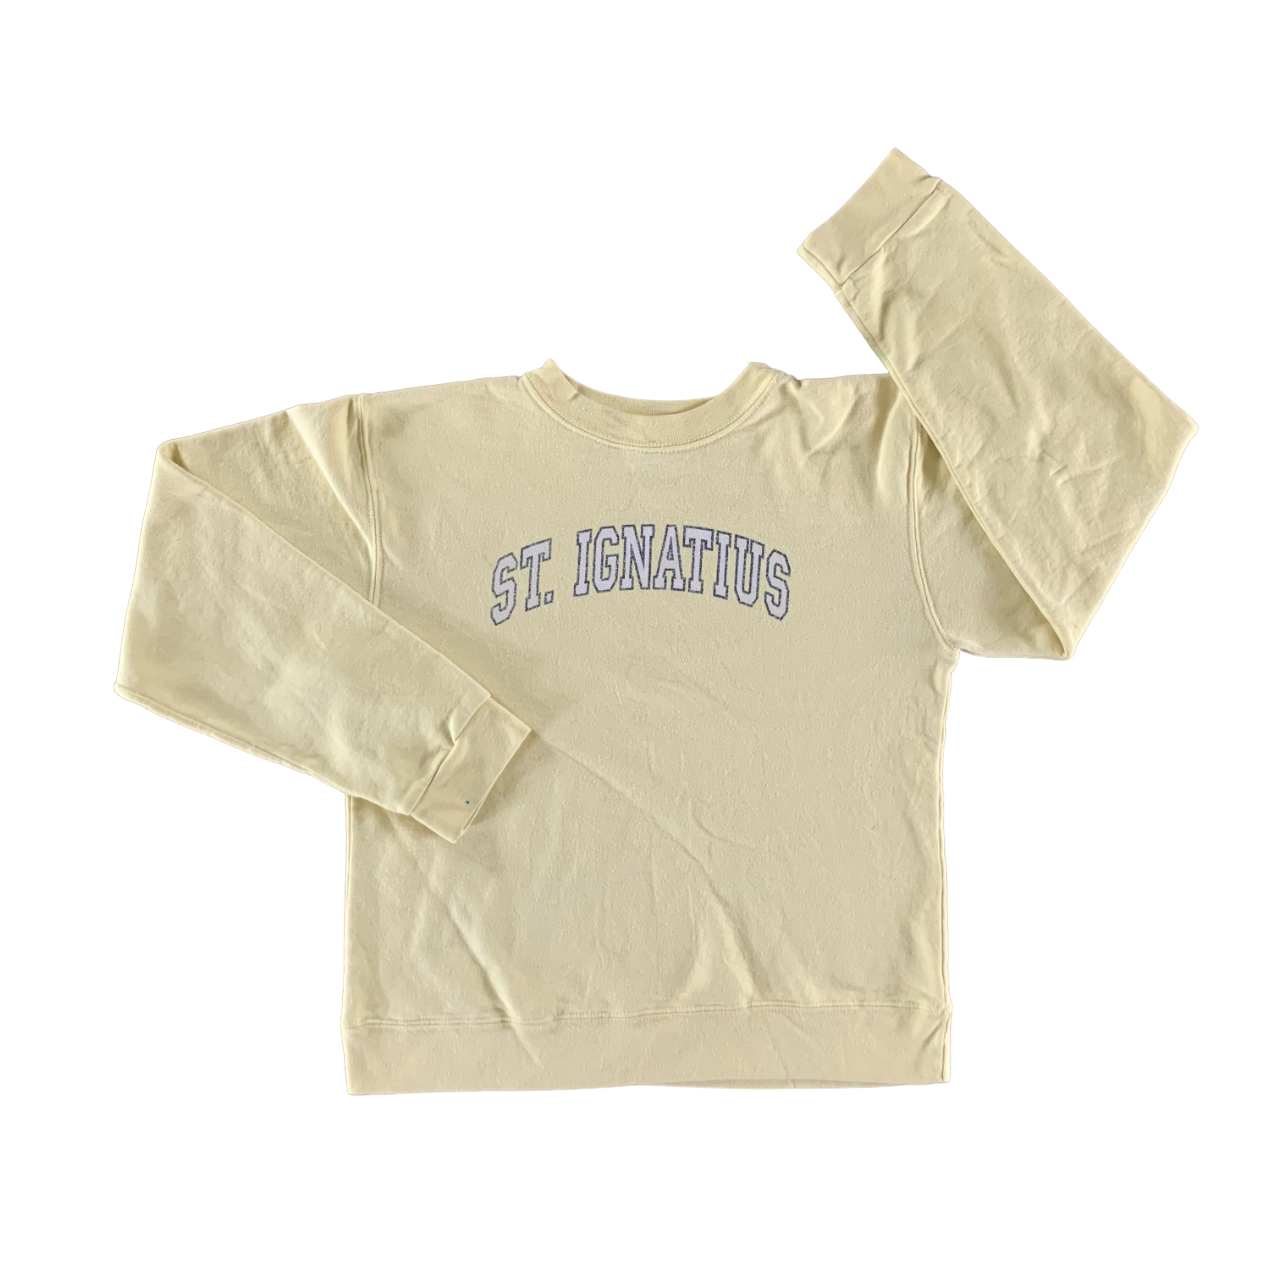 Vintage 1990s St. Ignatius Sweatshirt size Medium